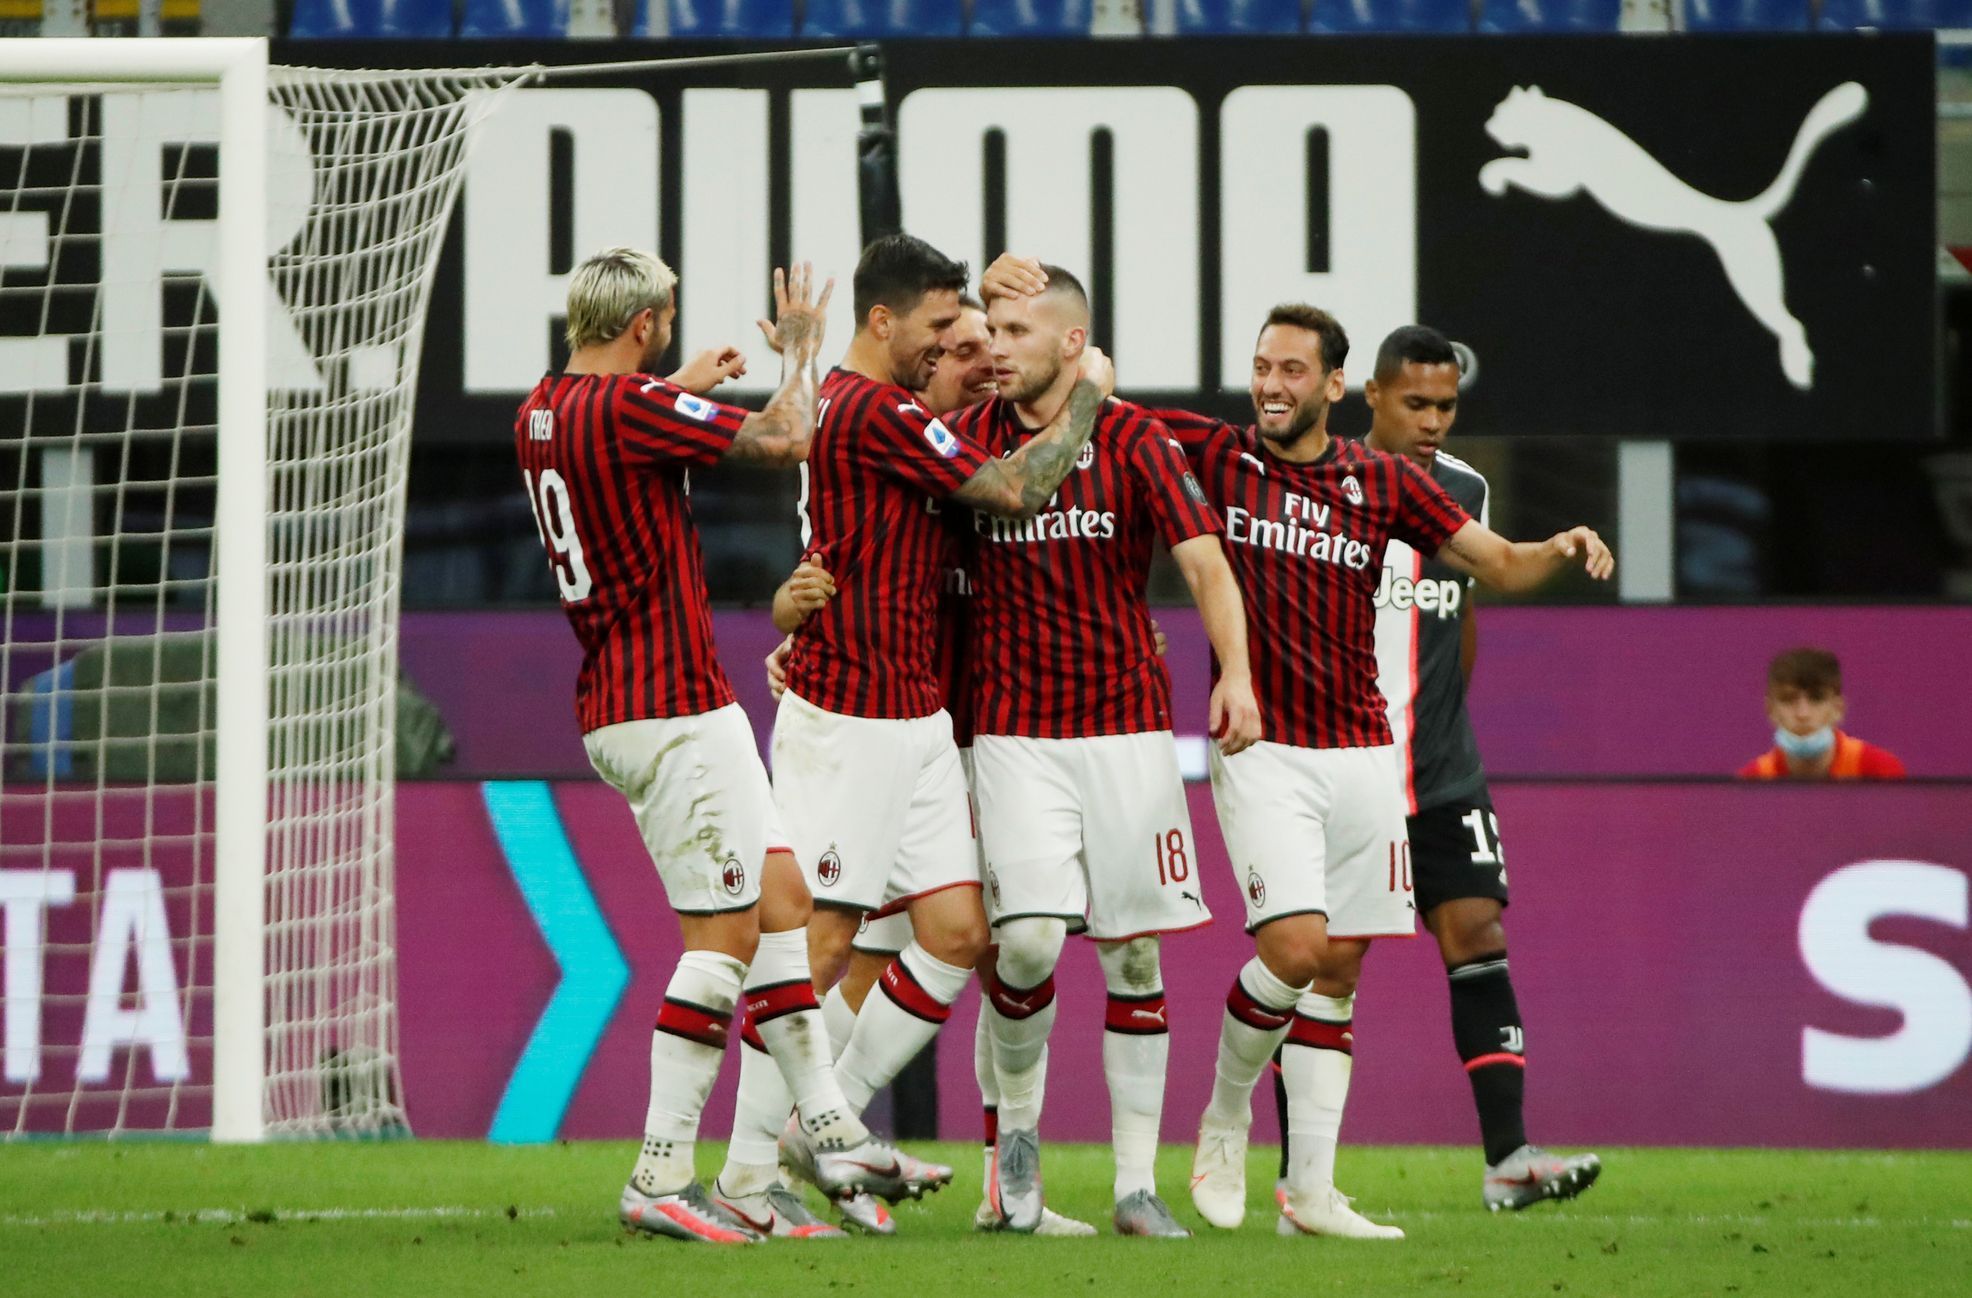 Radost hráčů AC Milán v zápase s Juventusem